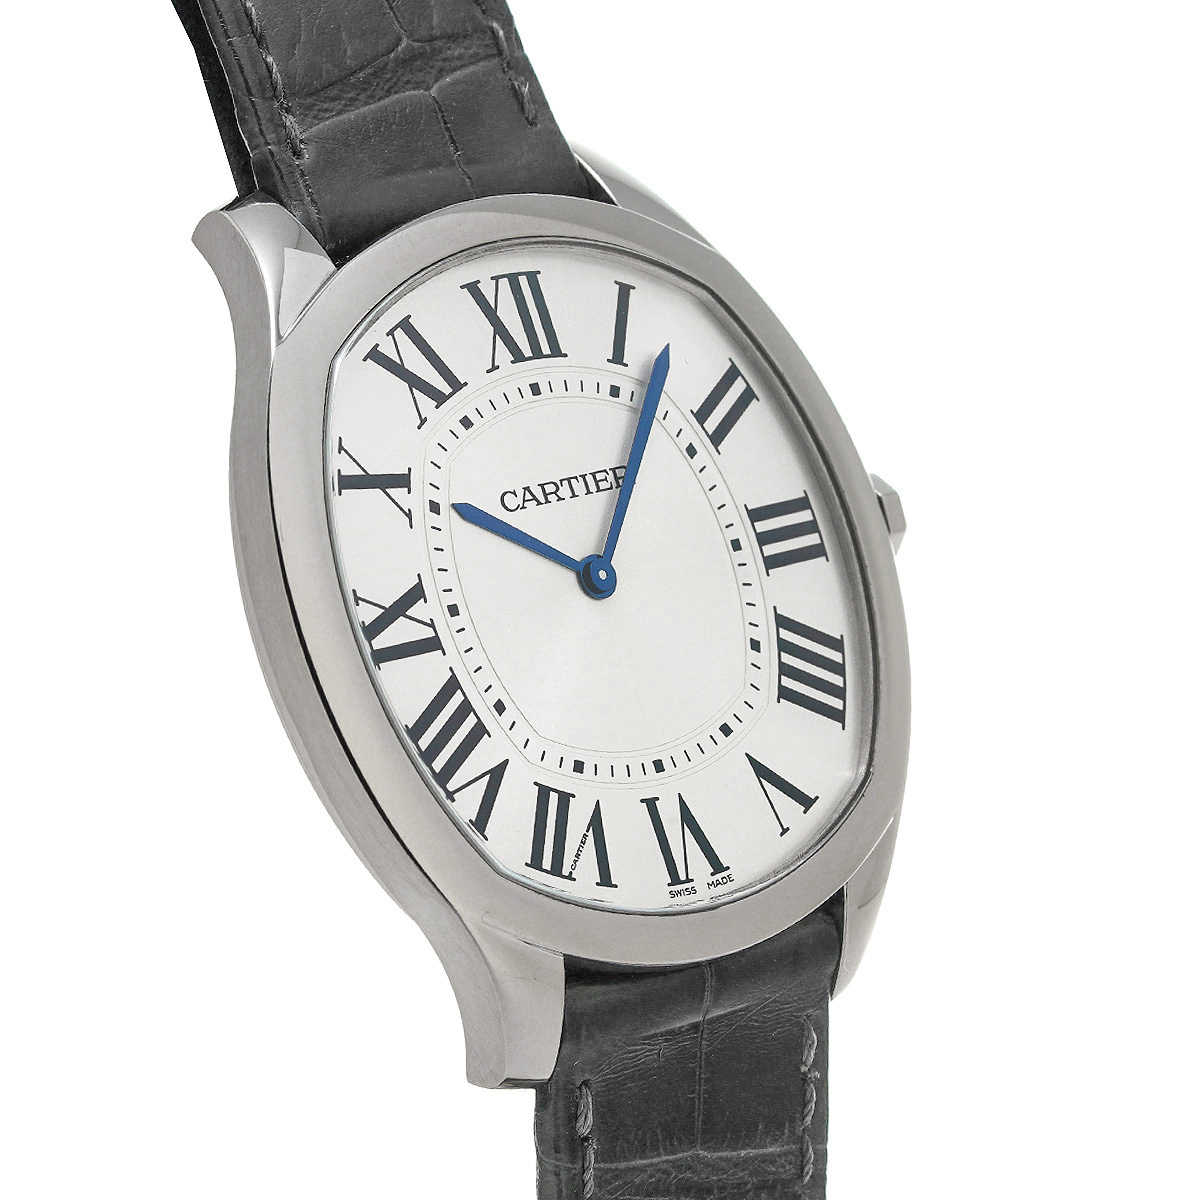 カルティエ CARTIER WGNM0007 シルバー メンズ 腕時計